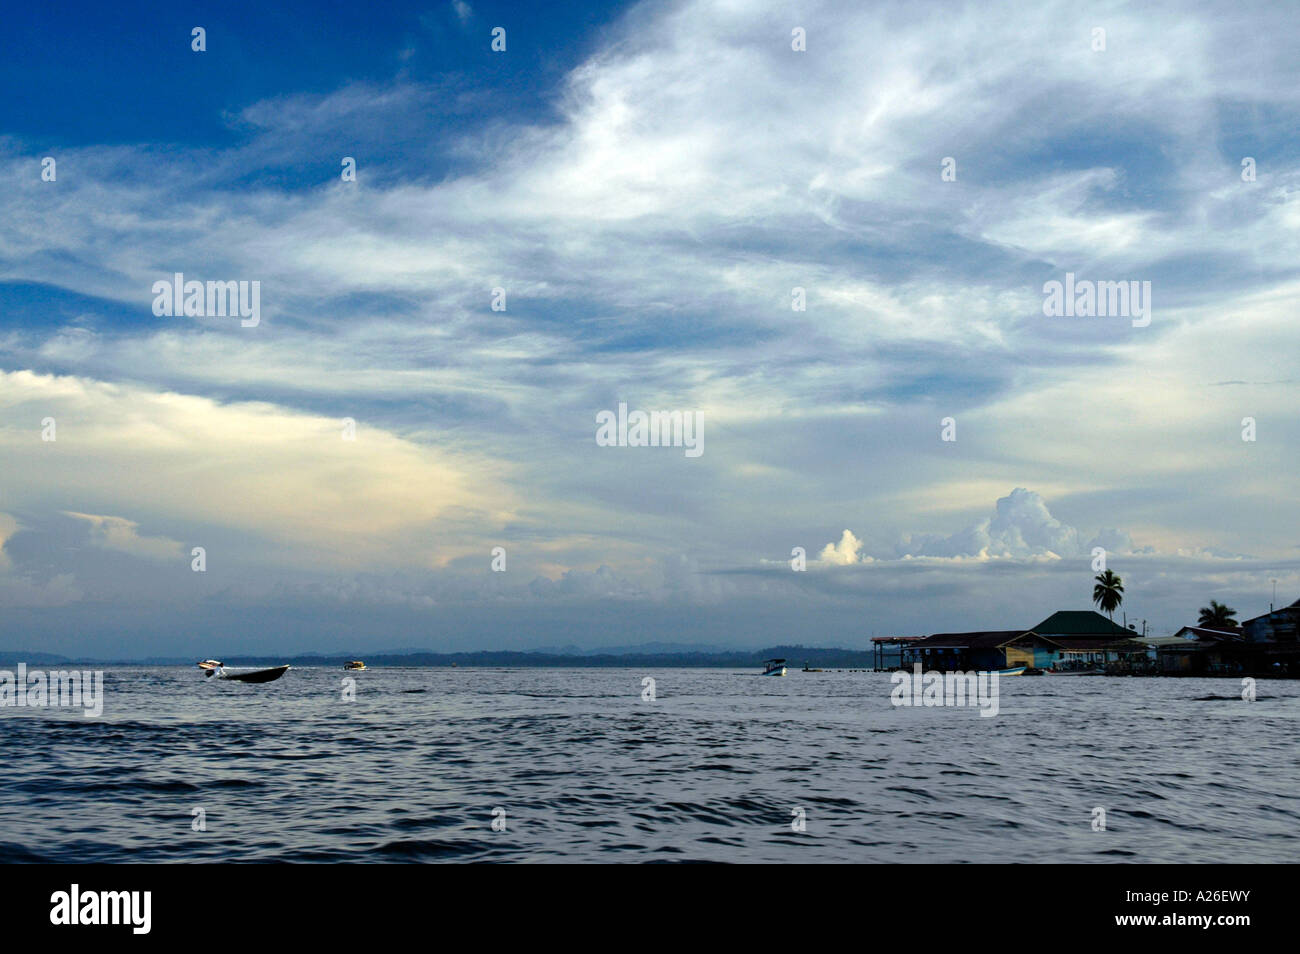 Colombus Island, Bocas del Toro Archipelago, Panama, Central America Stock Photo